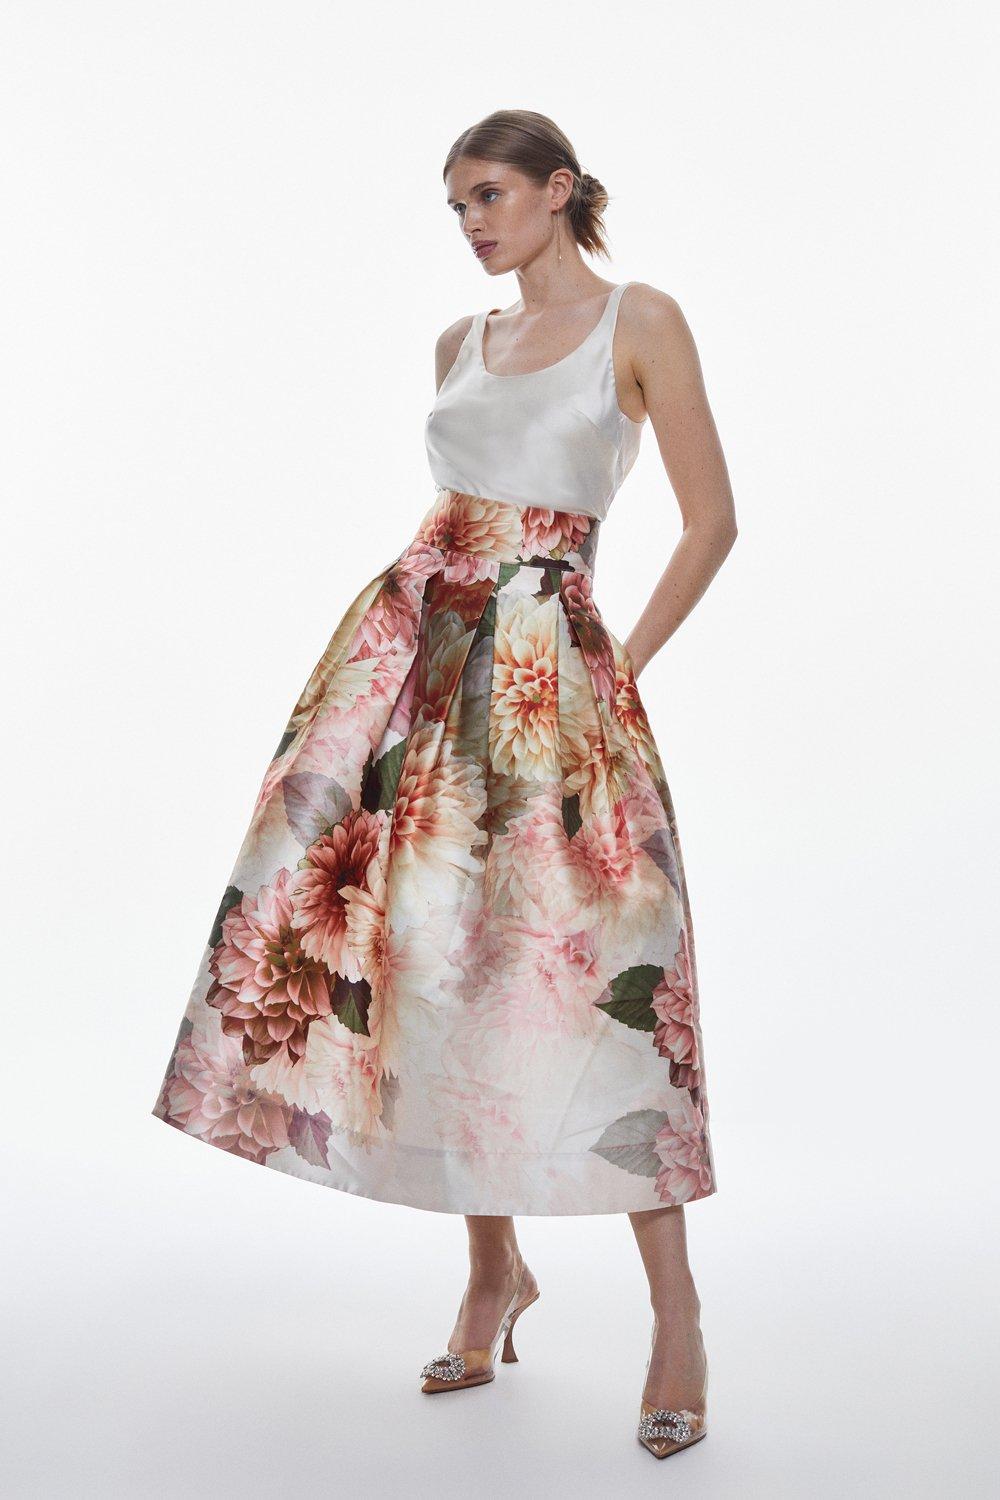 Skirt Floral Maxi Prom Karen Millen Garden |